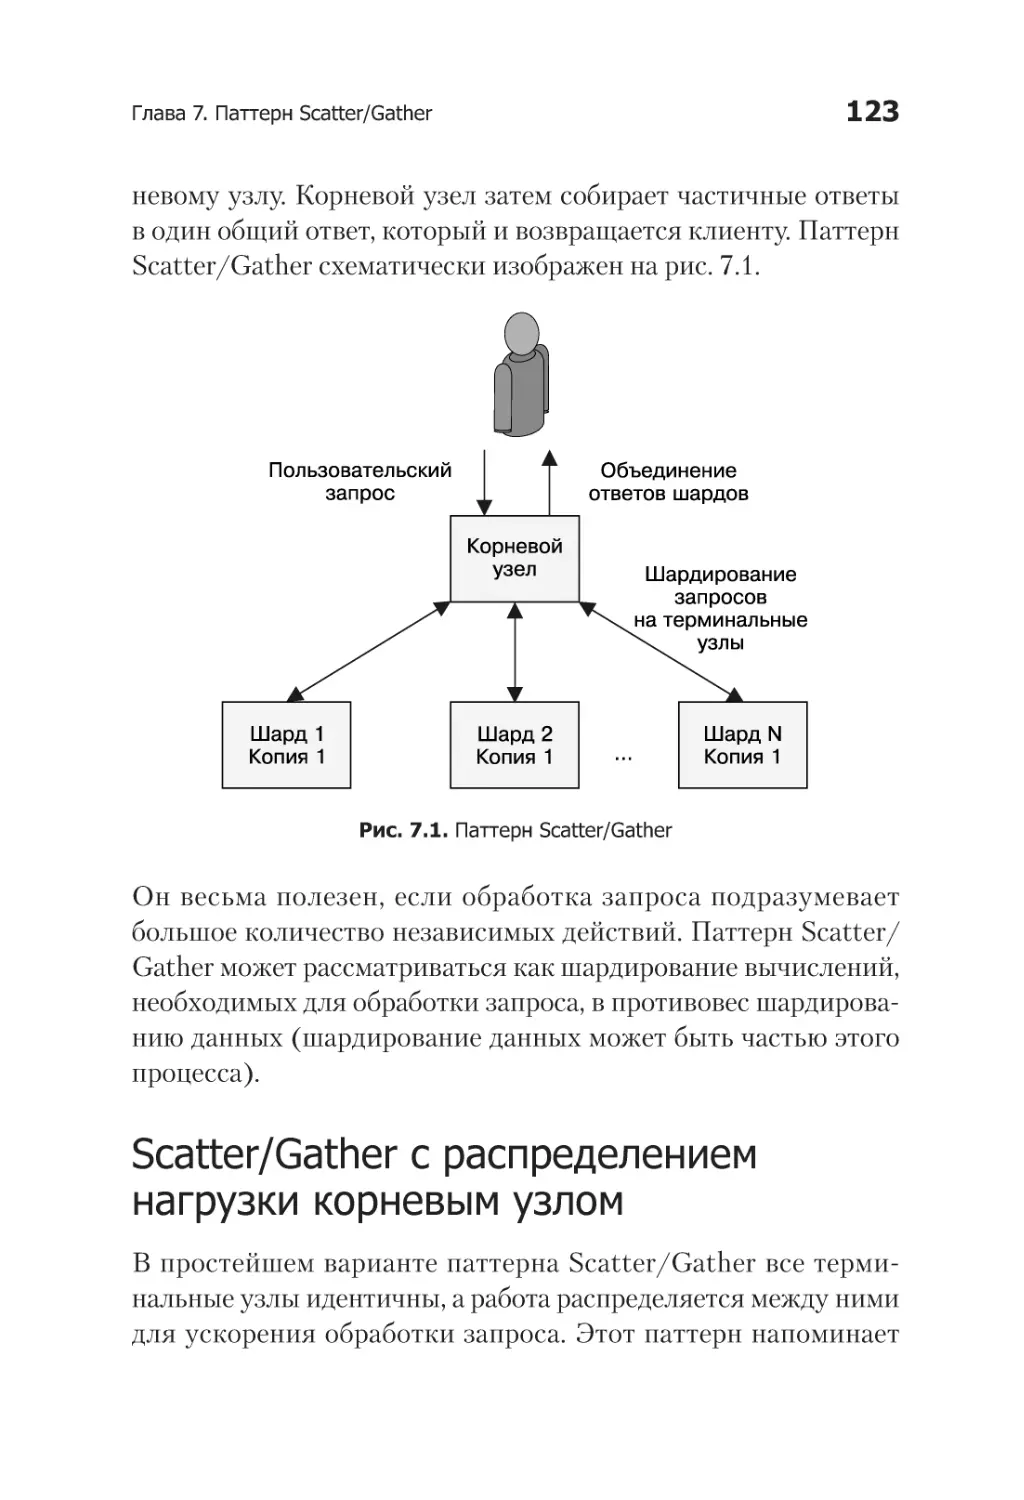 Scatter/Gather с распределением нагрузки корневым узлом